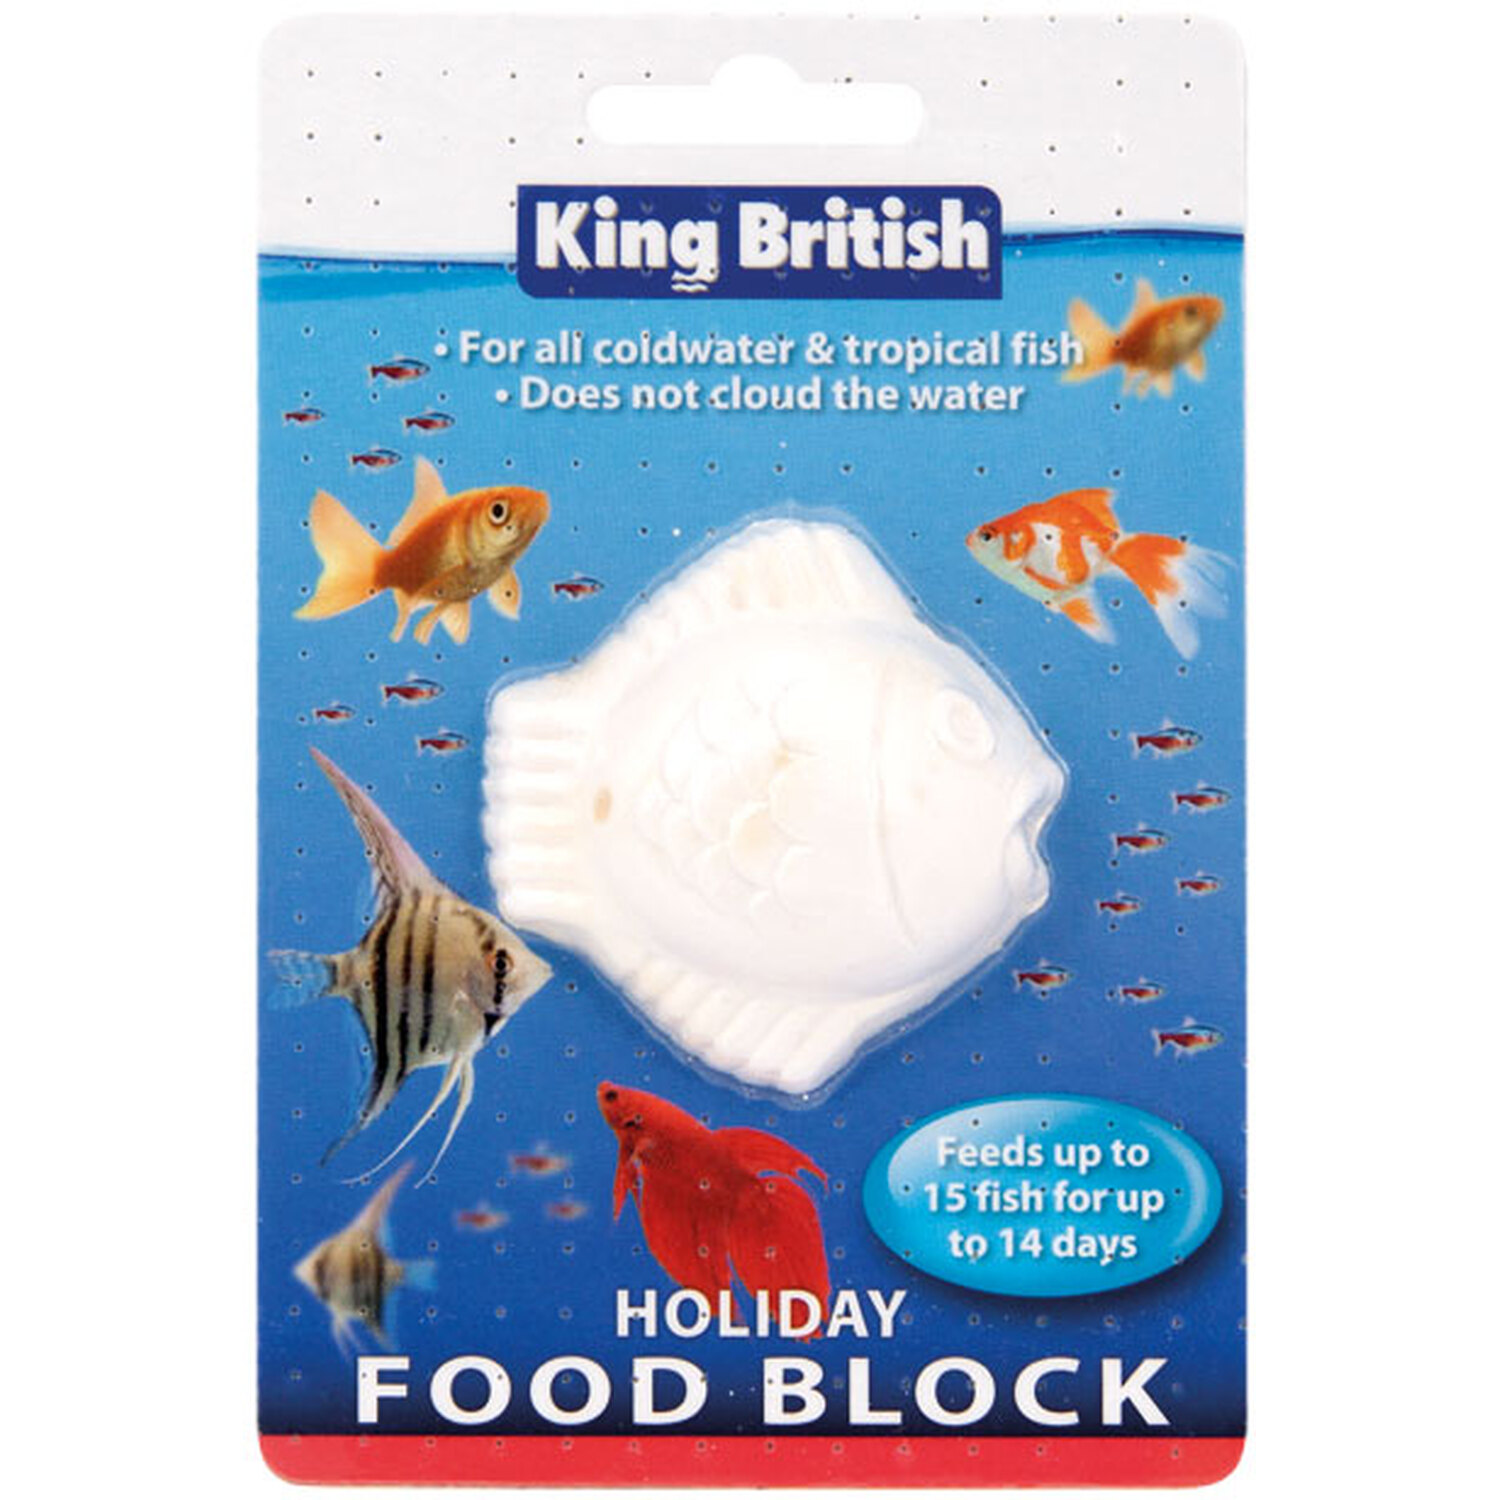 King British Holiday Food Block Image